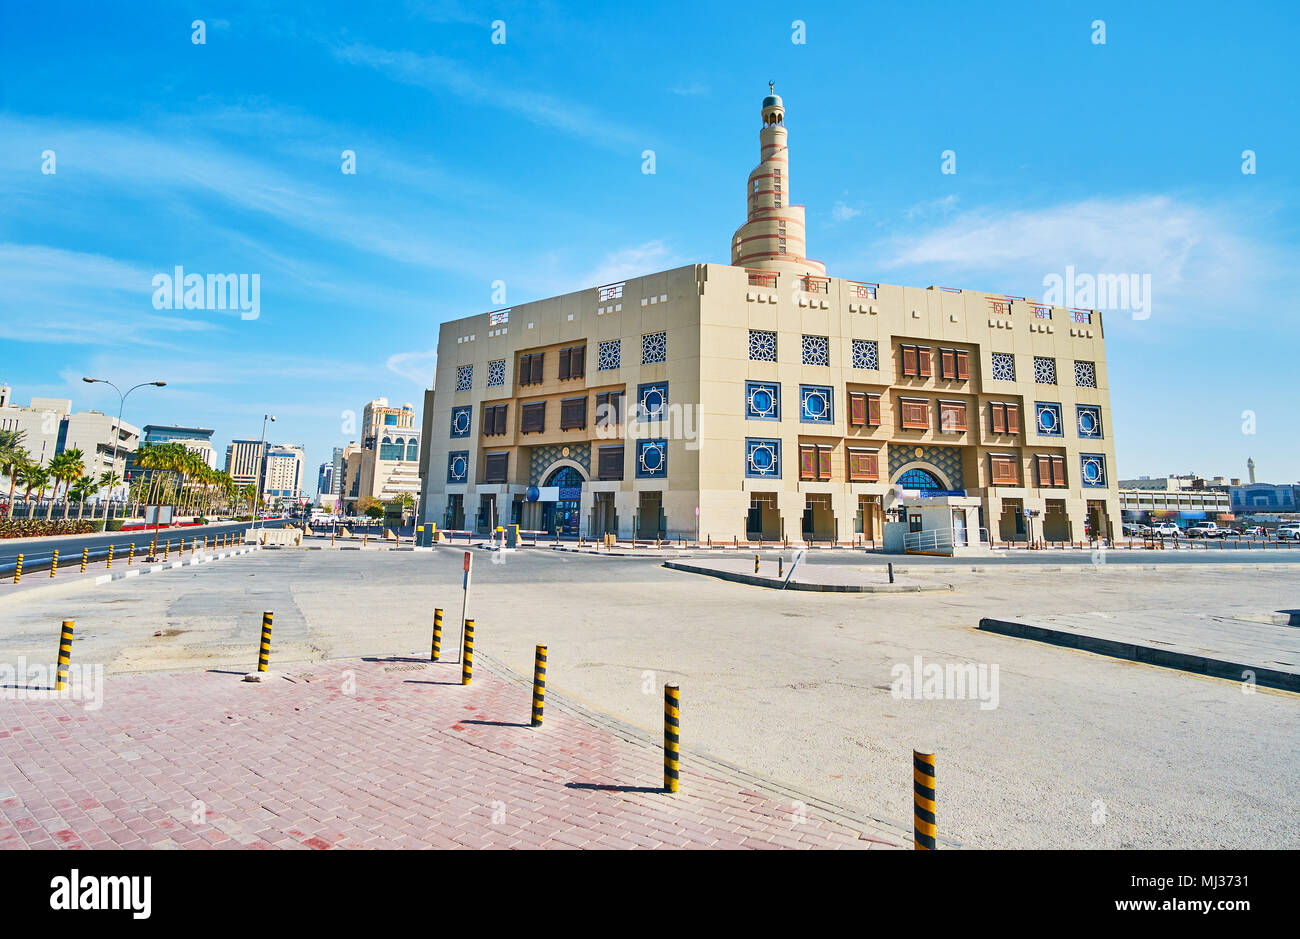 La costruzione del Fanar centro culturale islamico, situato accanto al Souq Waqif e famosa per la straordinaria architettura del suo moschea, Doha, Qatar. Foto Stock